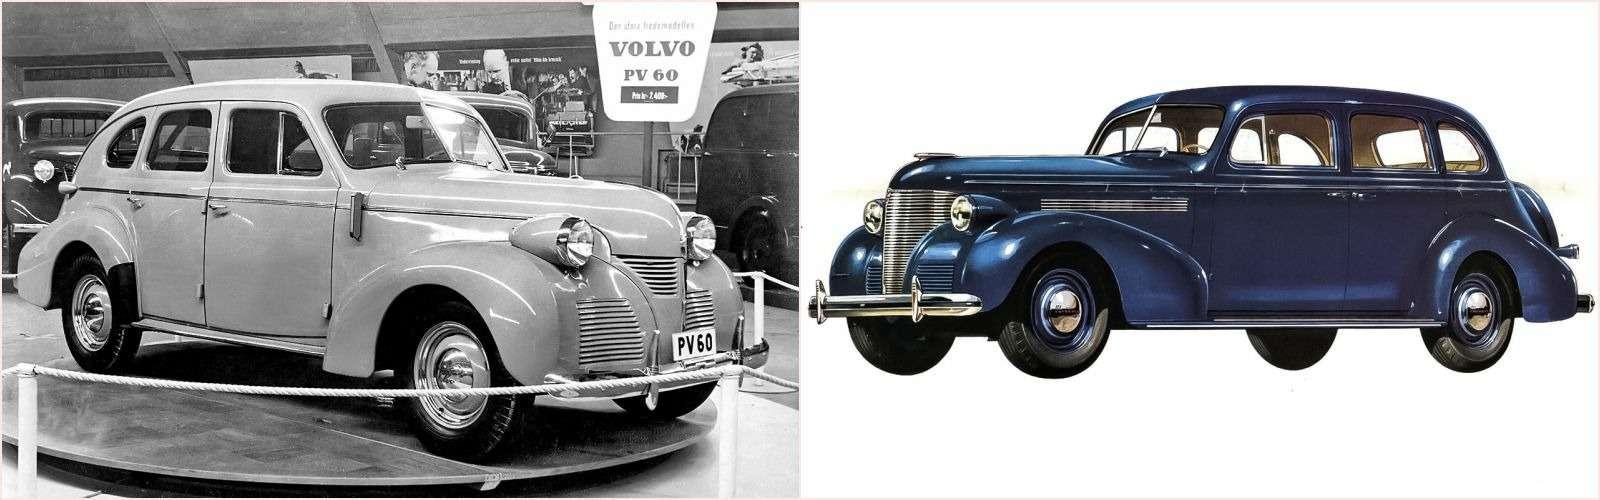 В поисках своего собственного пути шведы не торопясь копировали американские модели. На фото – Volvo PV60 и Chevrolet Master.